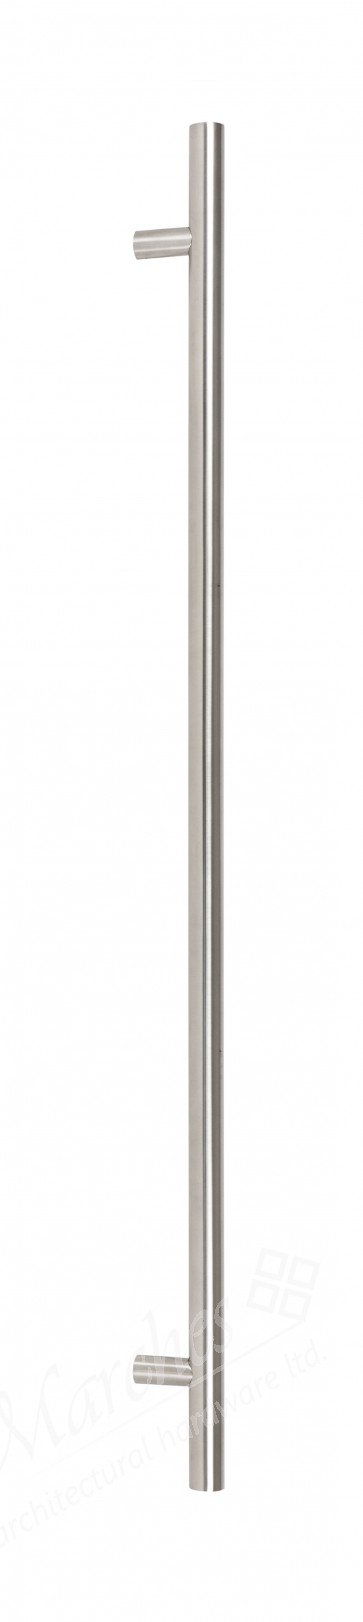 1.2m T Bar Handle Bolt Fix 32mm Ø - Satin SS (316)